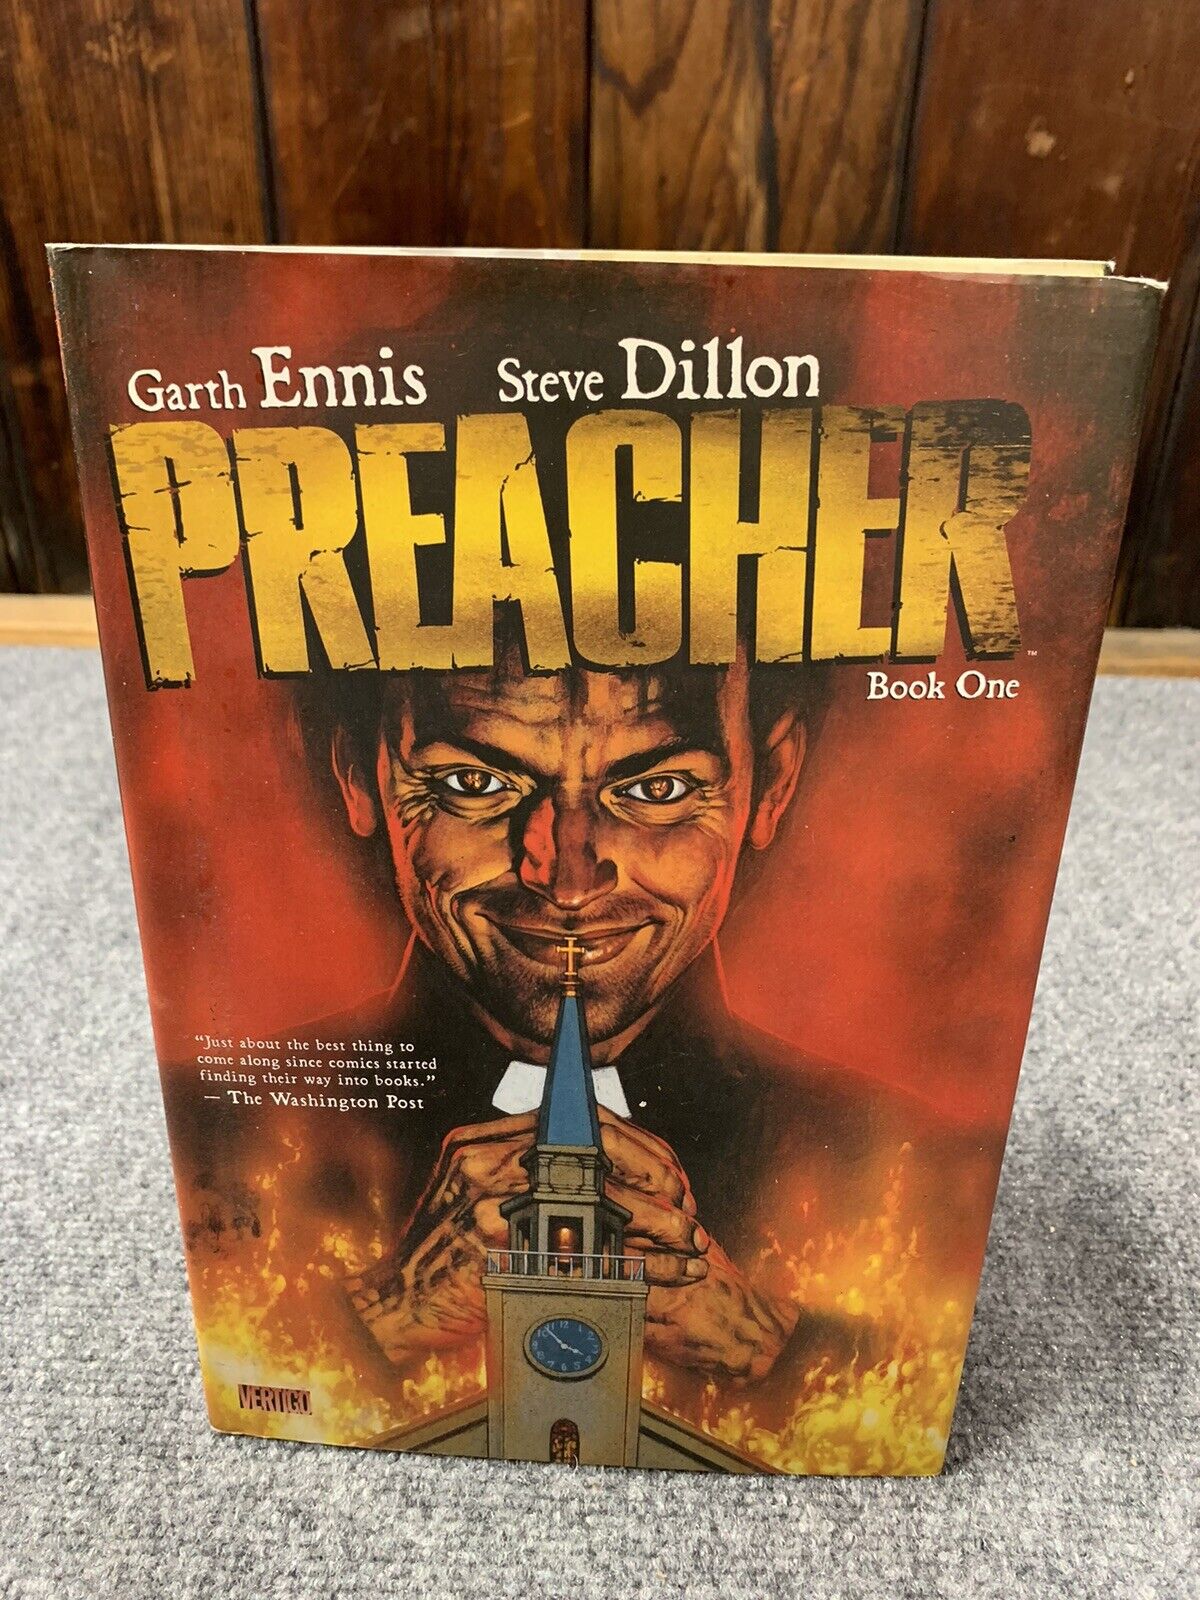 Preacher Book One by Garth Ennis Deluxe Hardcover Vertigo DC Comics